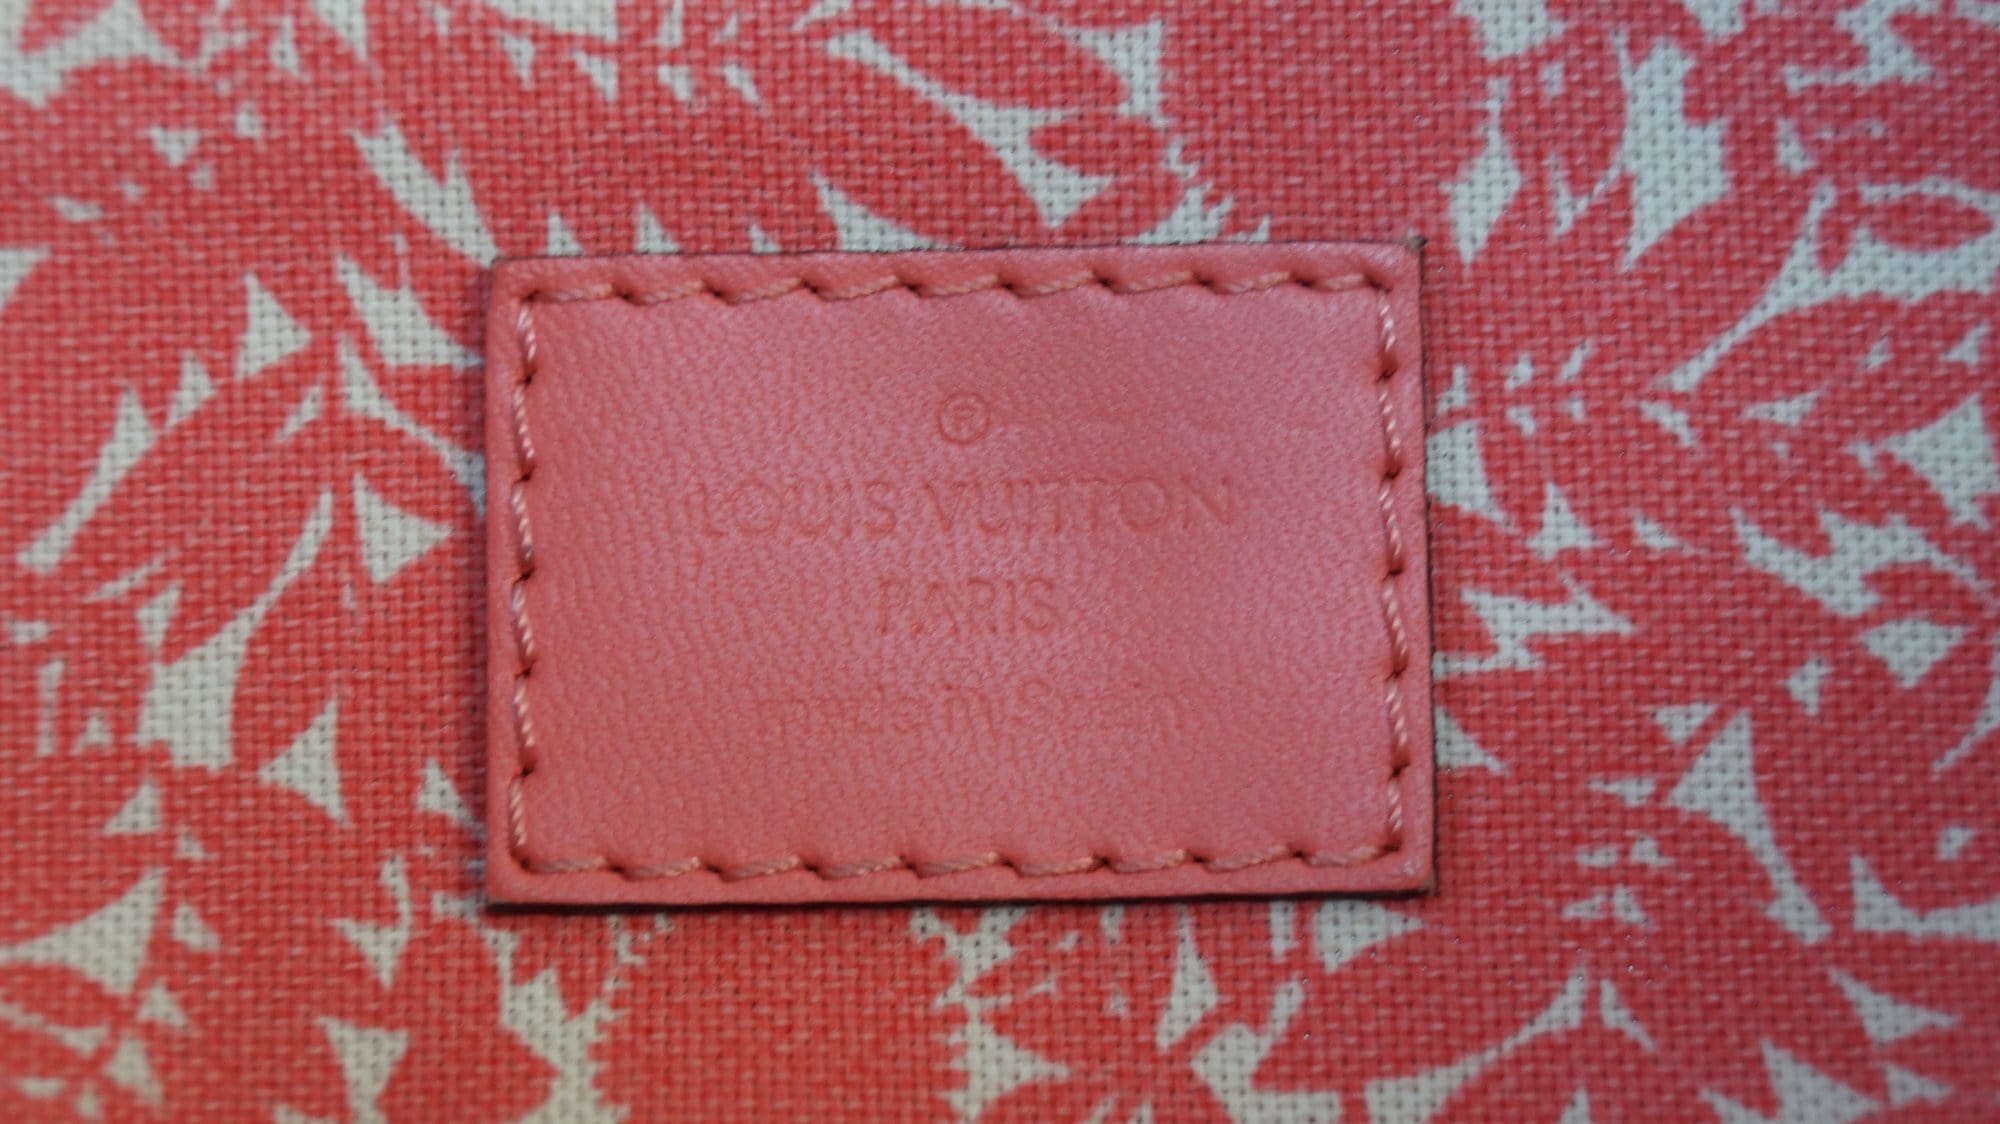 Louis Vuitton Pink 2009 Cruise Rider Articles de Voyage Shoulder Bag 861939